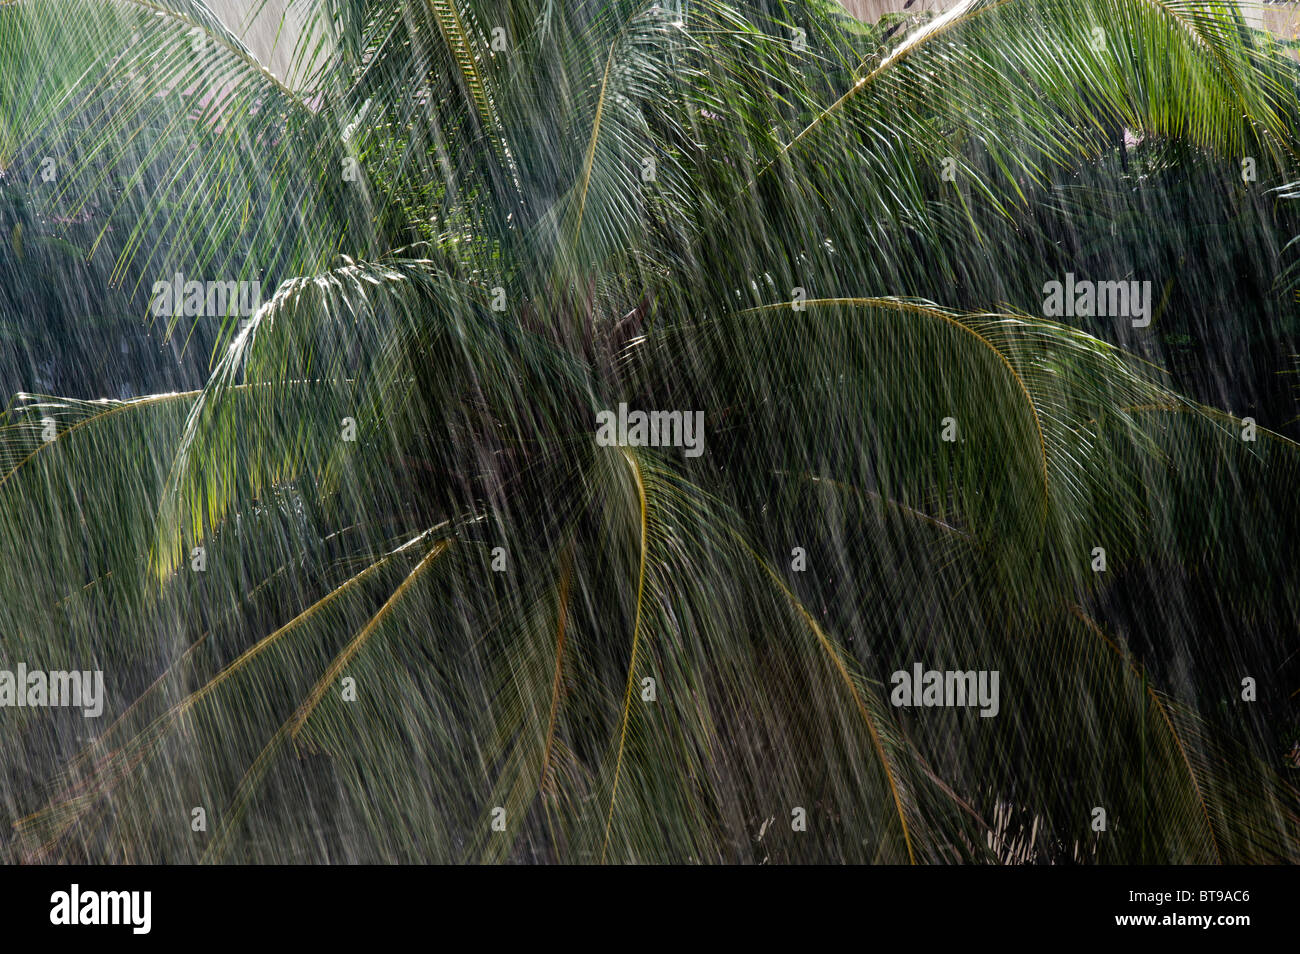 Piogge monsoniche nella parte anteriore delle palme in India Foto Stock